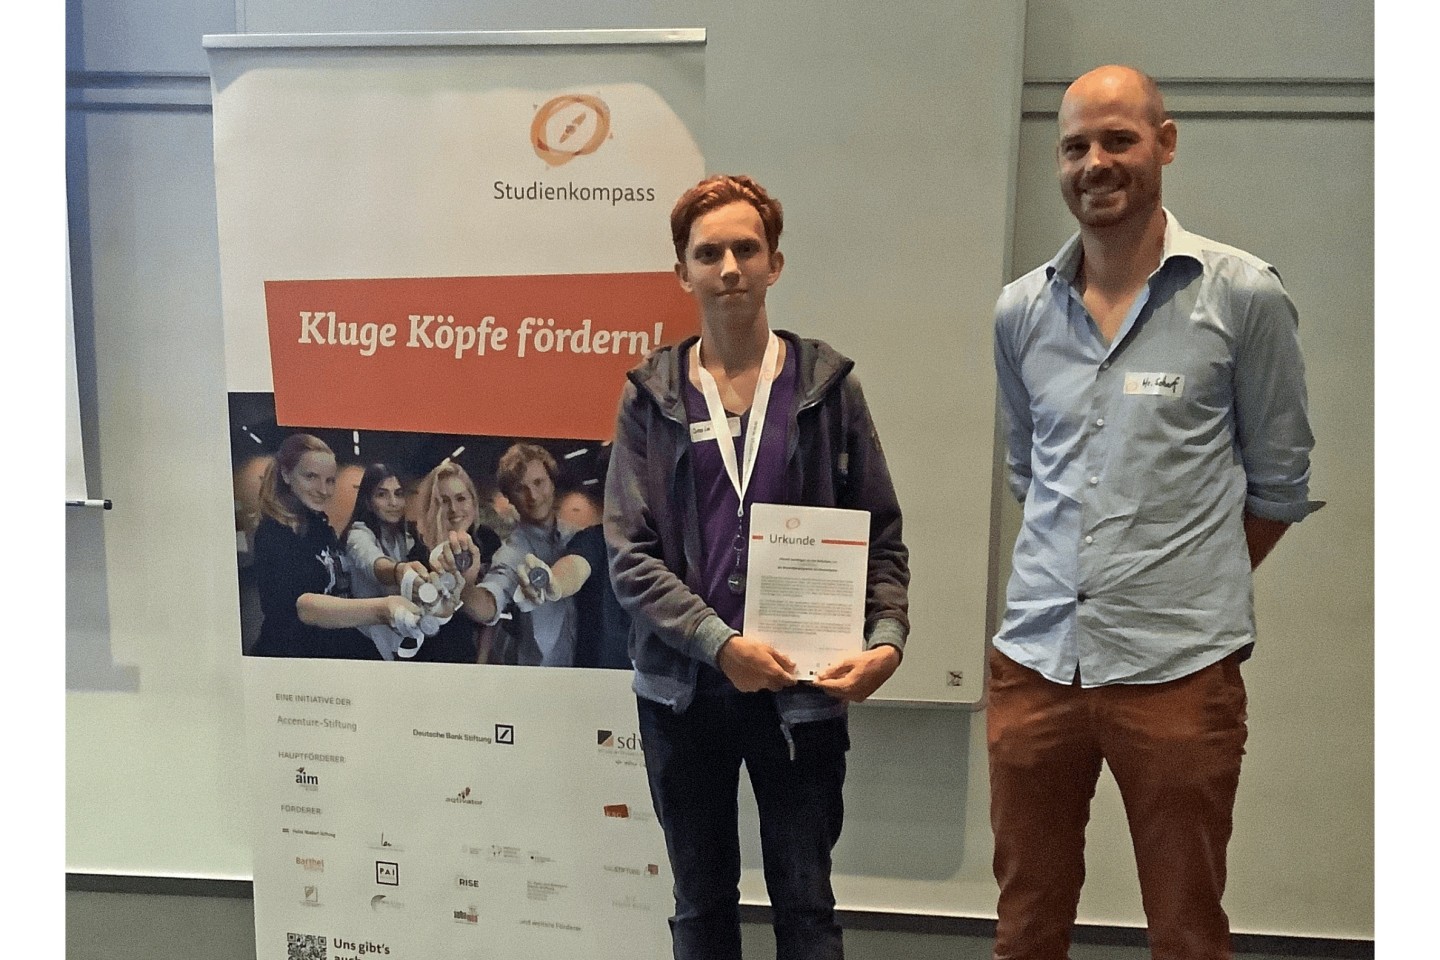 Josia Petker von der Gesamtschule Bad Driburg startetet mit Unterstützung der Heinz Nixdorf Stiftung